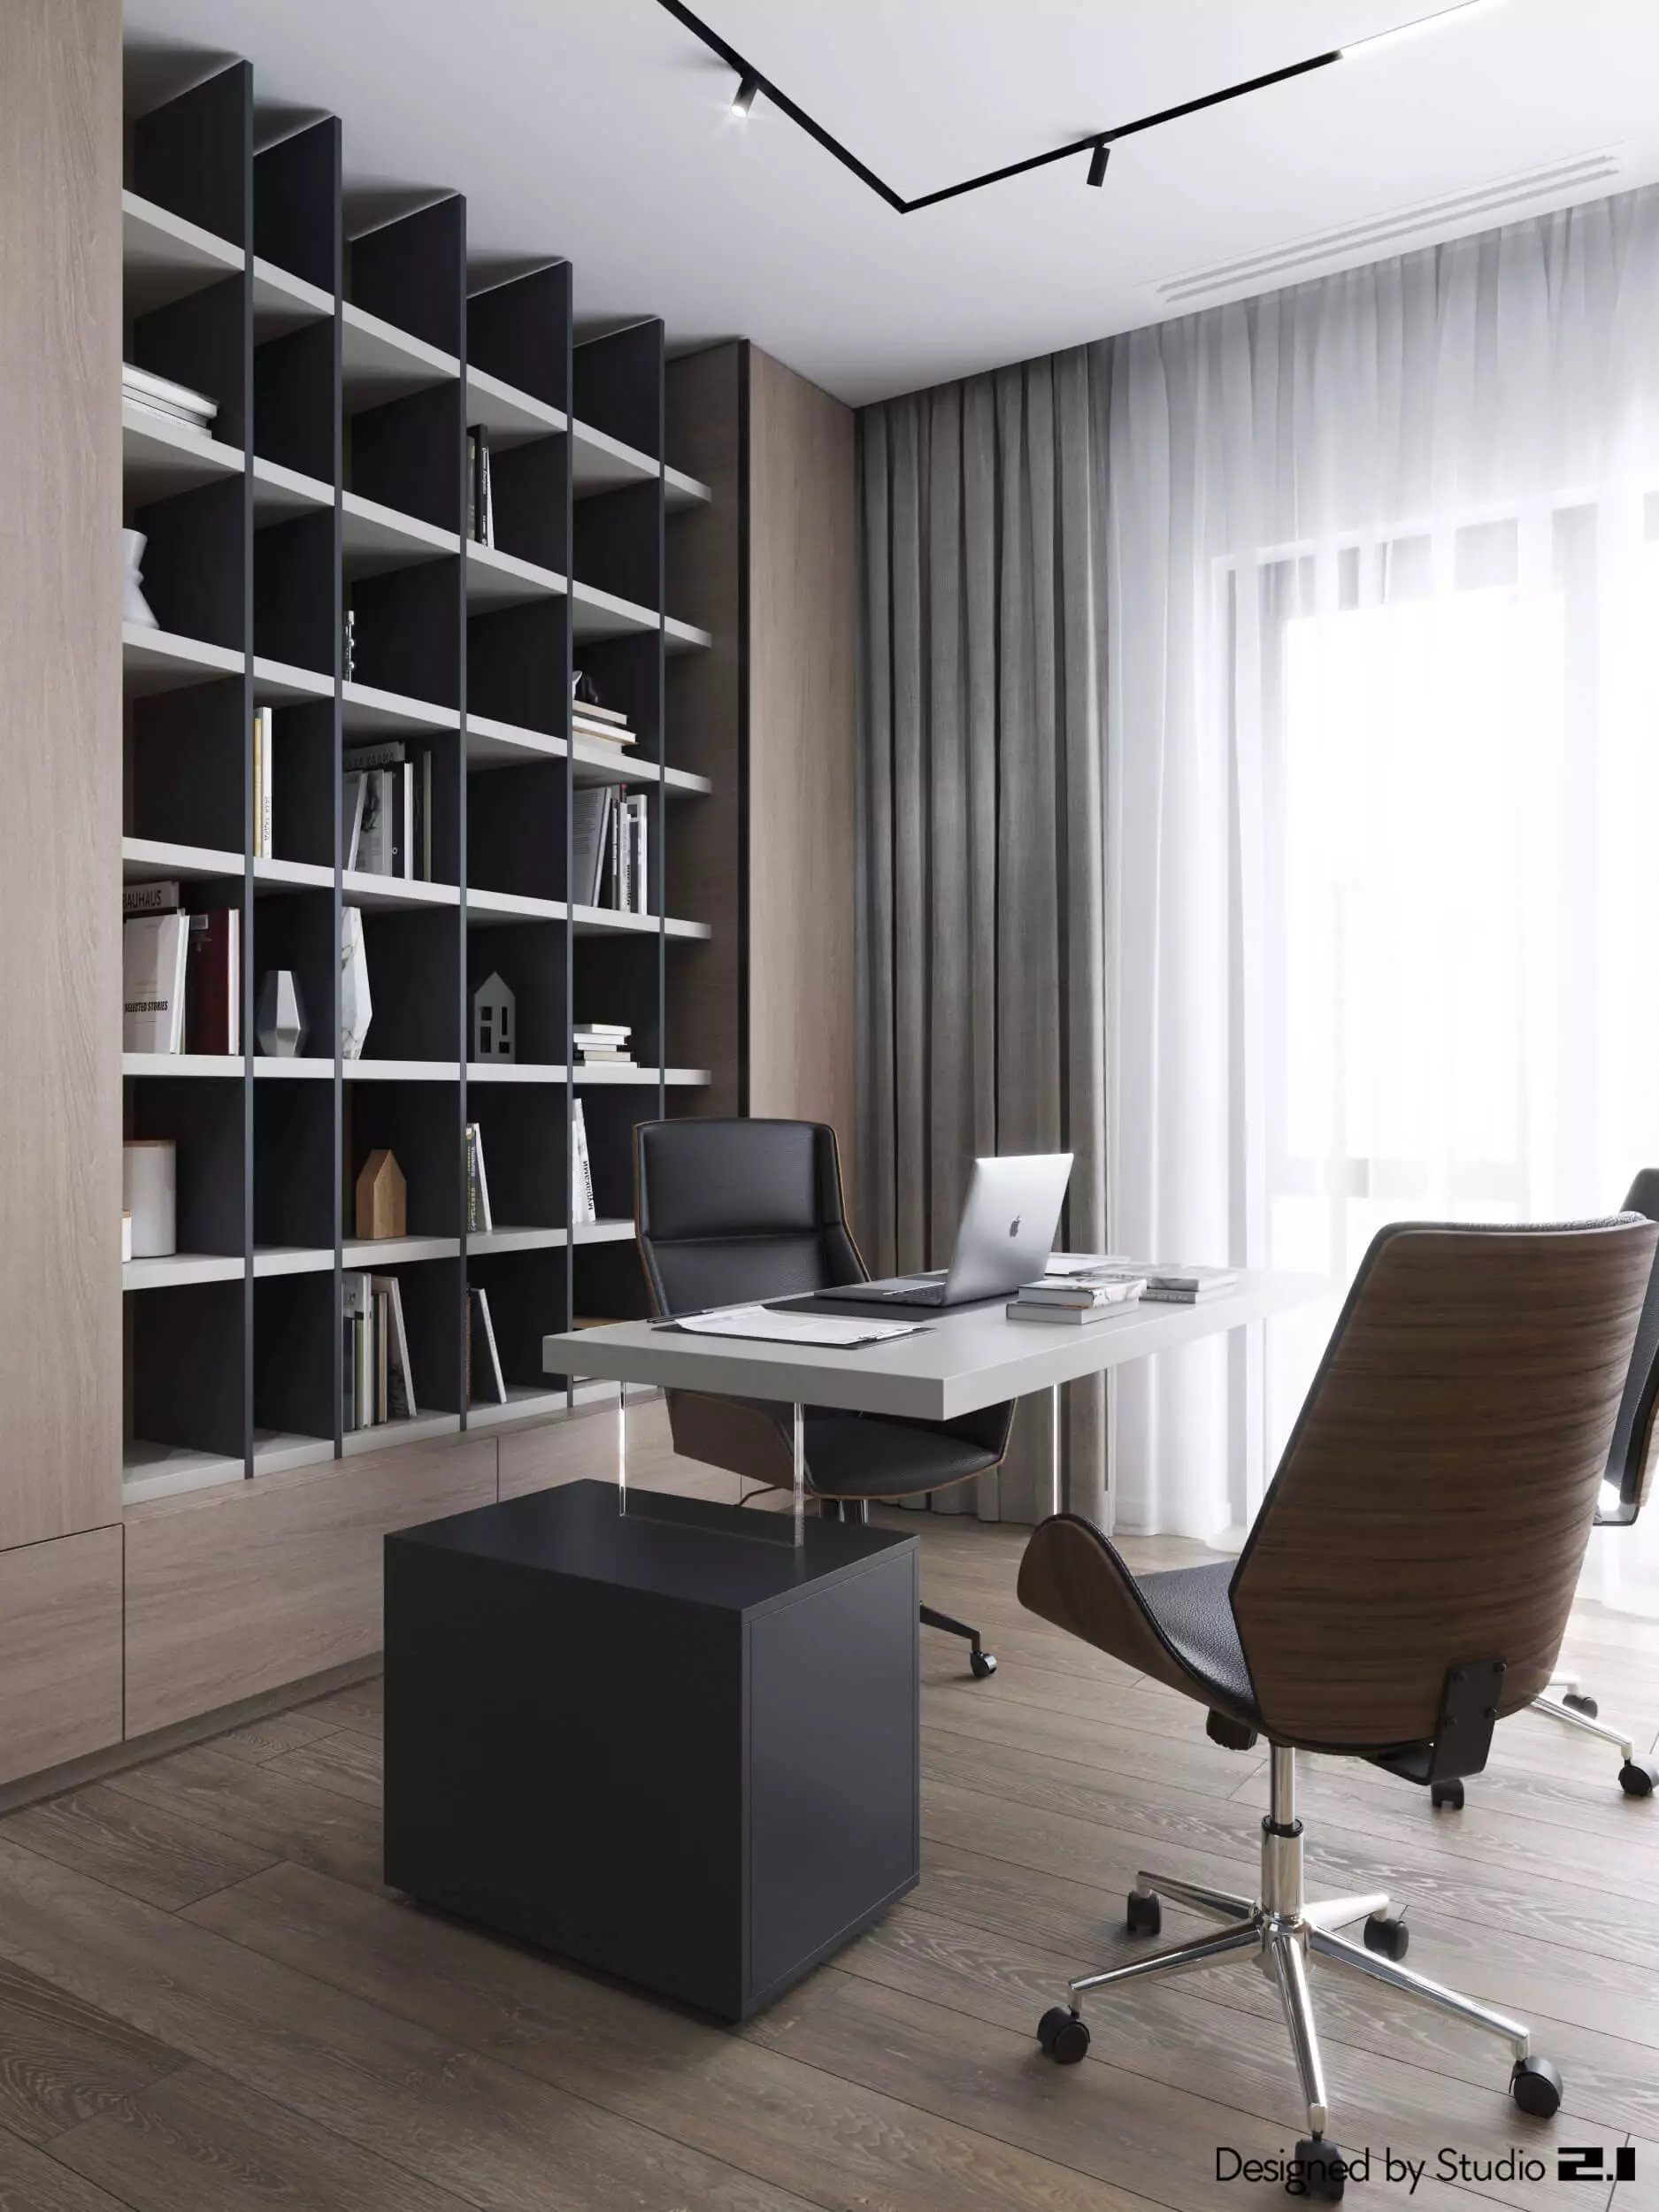 Design interior realizat de Studio 2.1 intr-un stil modern, minimalist cu accente de negru dar totodata o atmosfera calda data de culoarea lemnului natural.